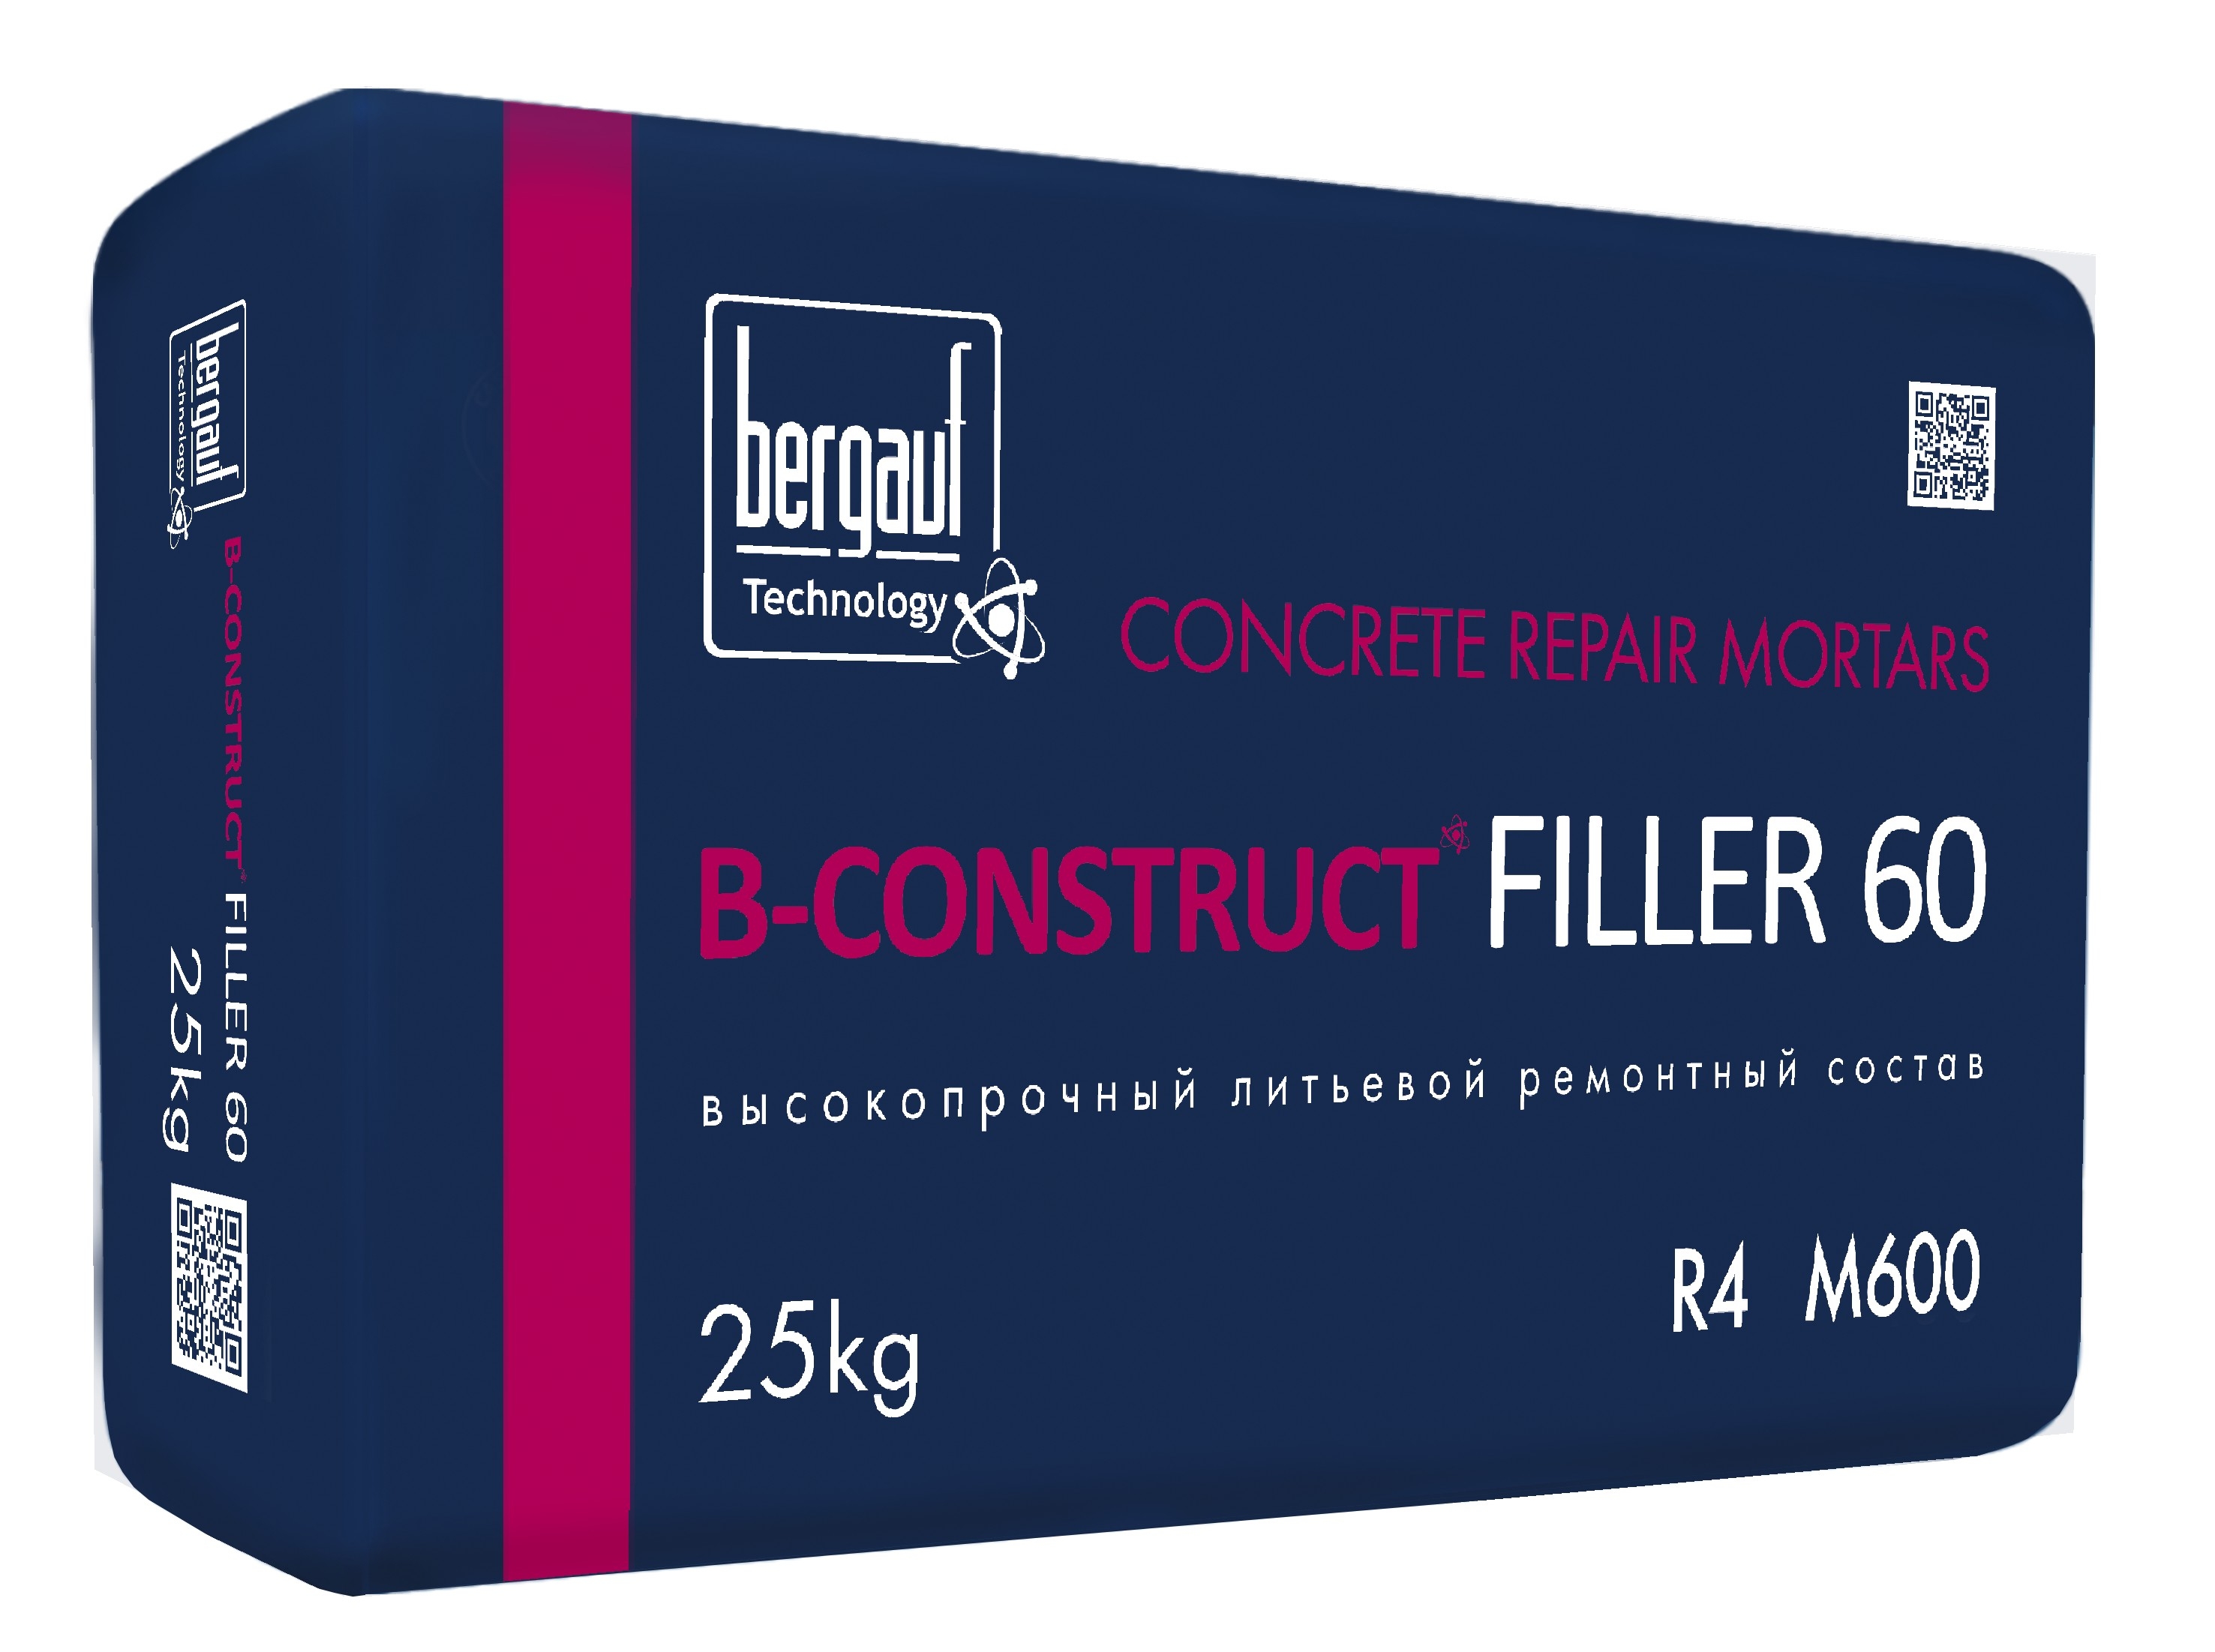 B-Construct FILLER 60